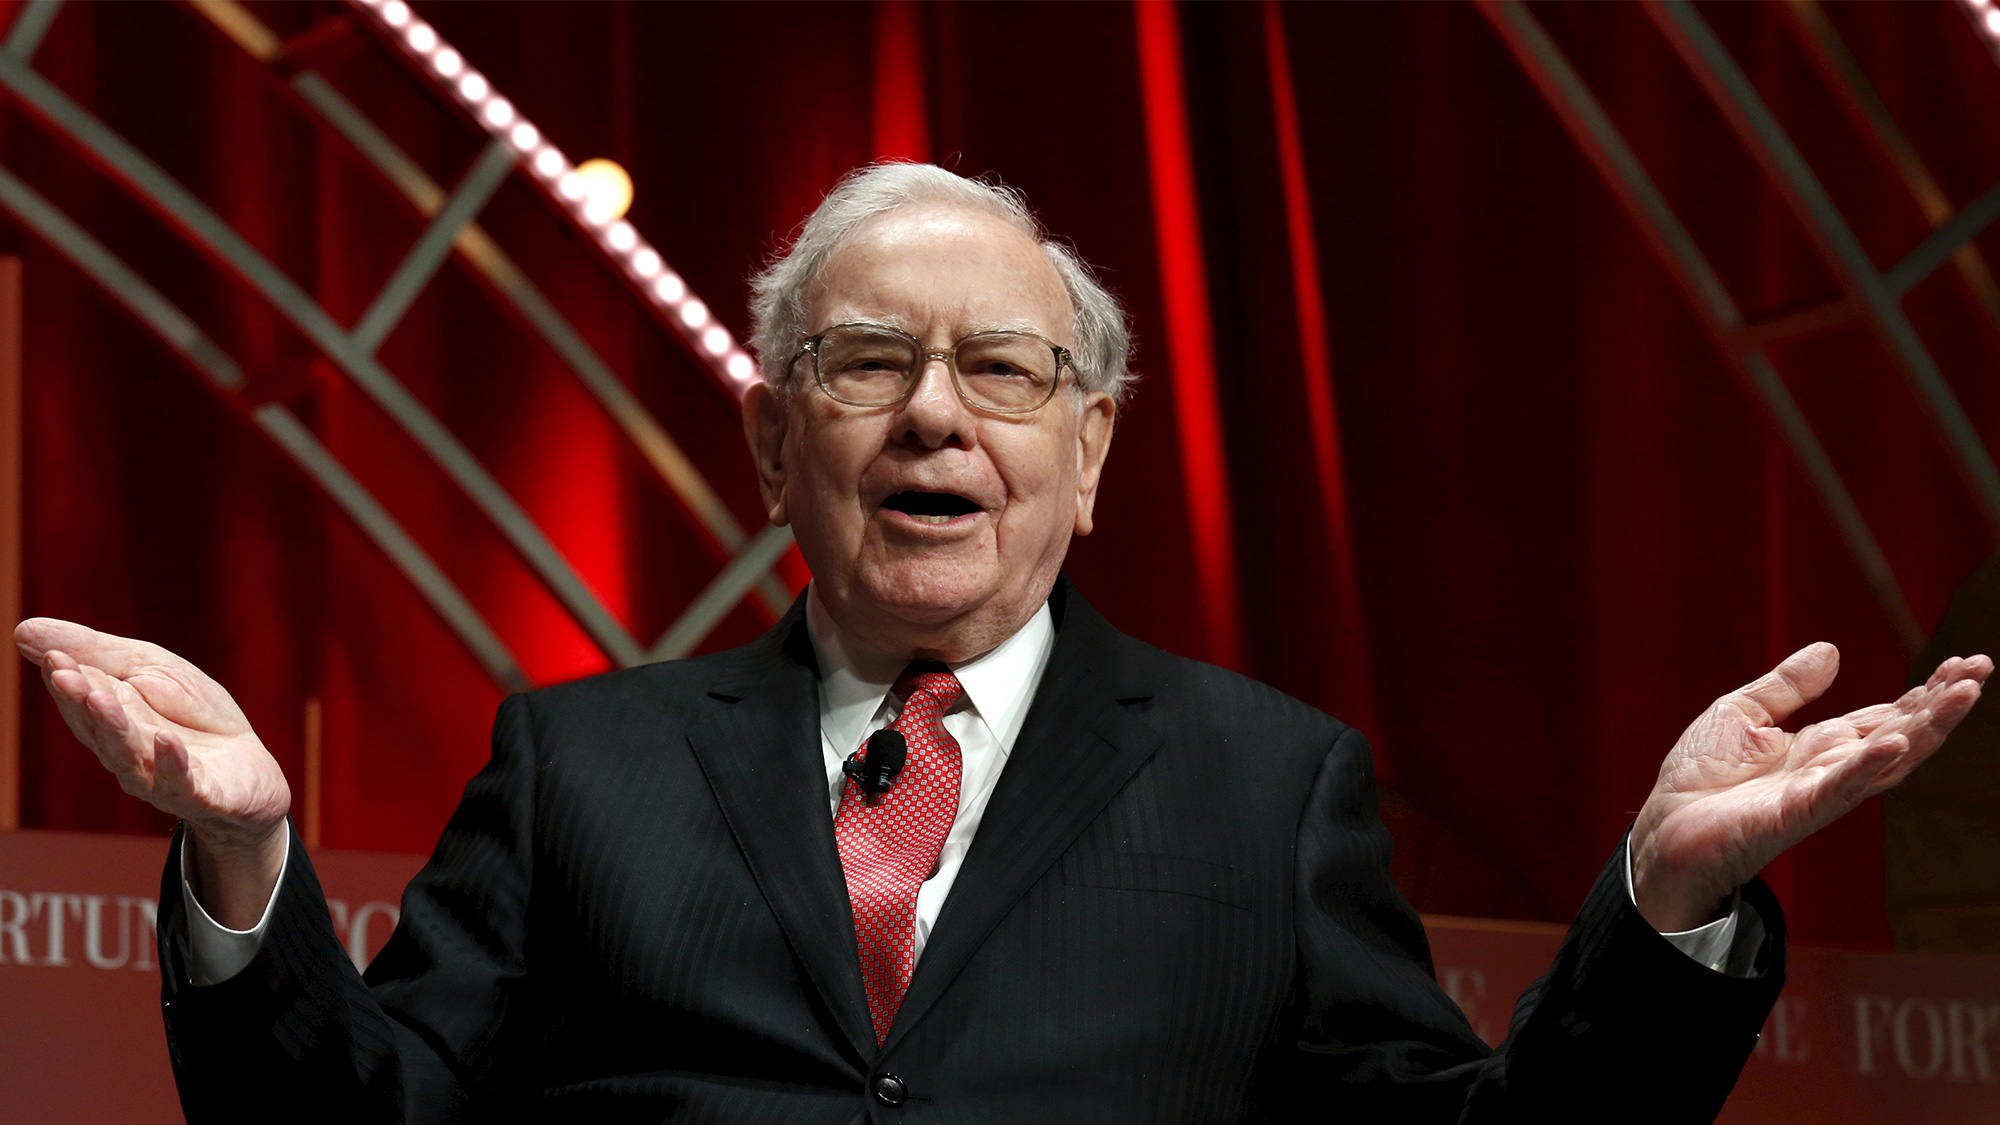 Tỷ phú Warren Buffett từng đưa ra lời khuyên: Một trong những kỹ năng cần có để thành công chính là thuyết trình trước công chúng - Ảnh: Reuters